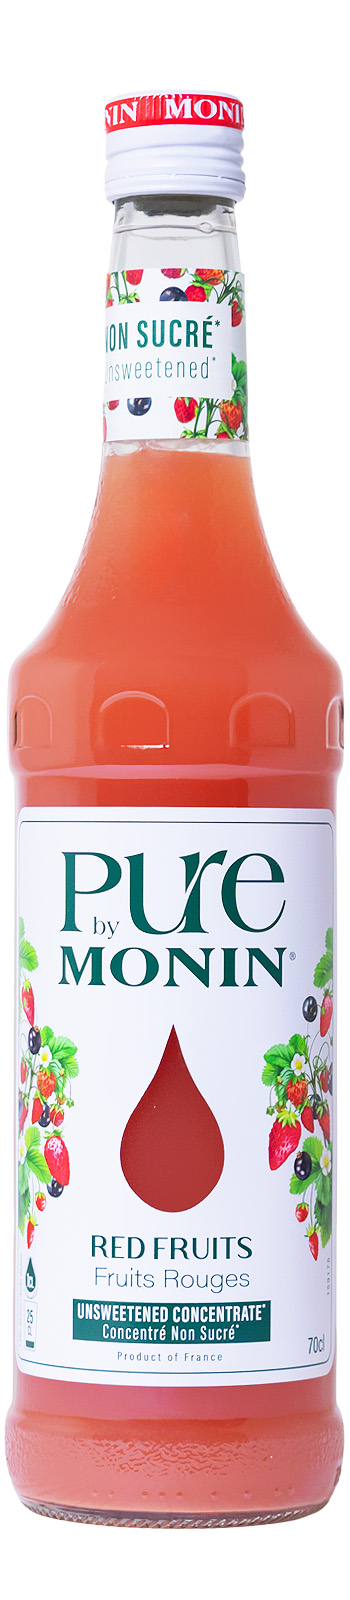 Monin Pure Red Berries Konzentrat - 0,7L